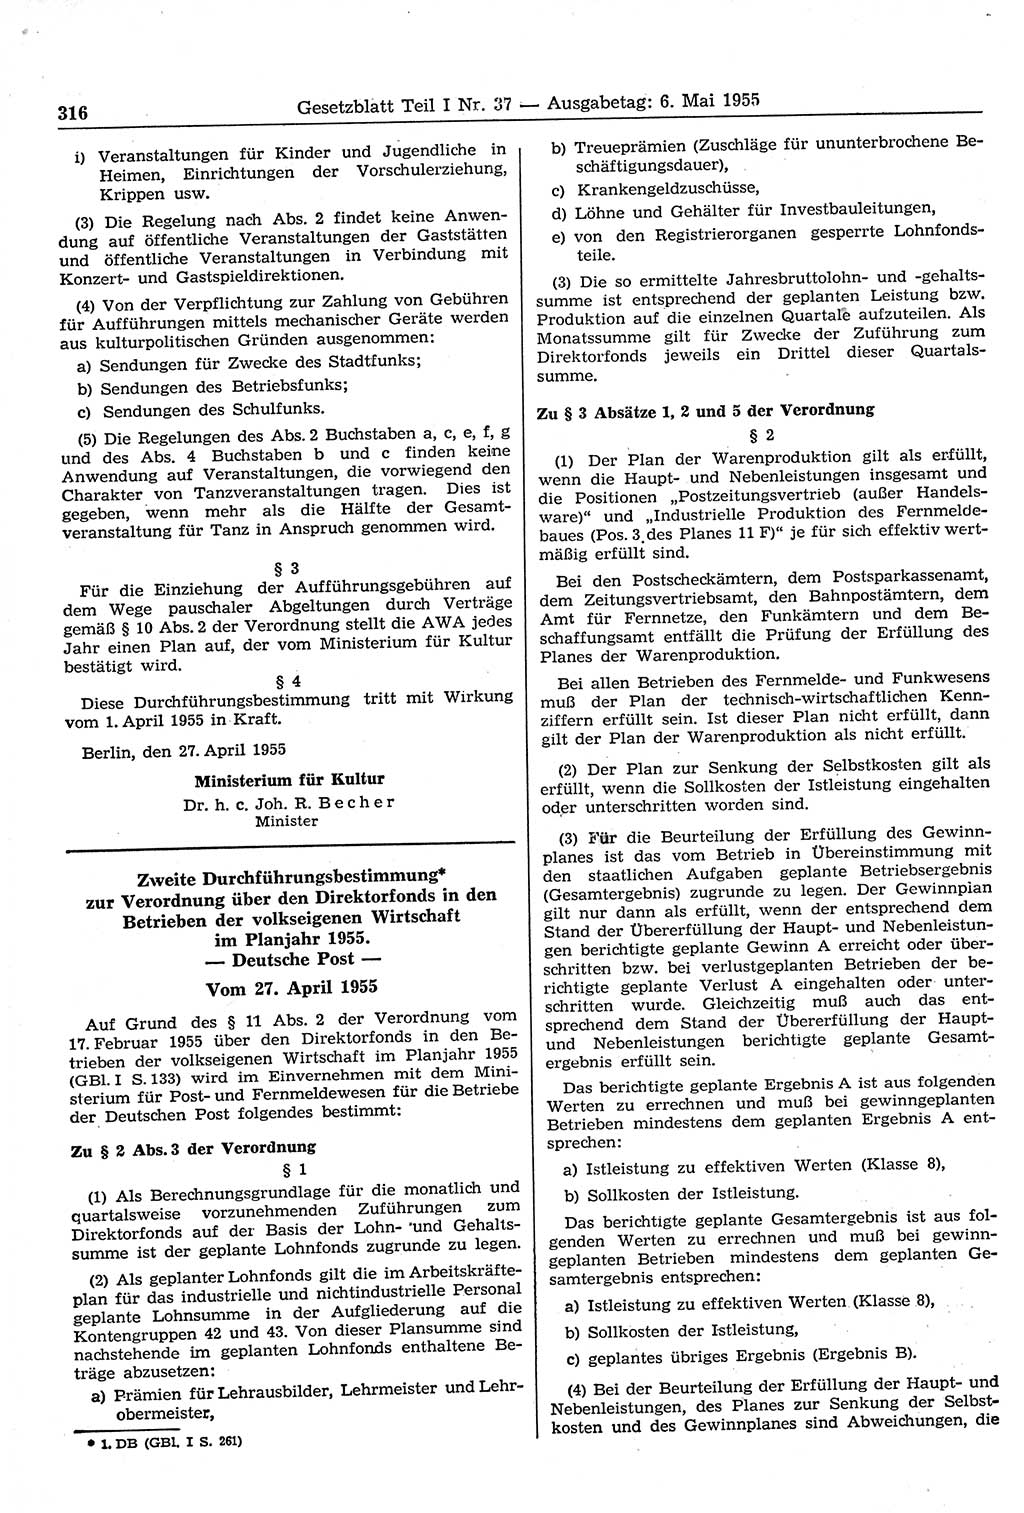 Gesetzblatt (GBl.) der Deutschen Demokratischen Republik (DDR) Teil Ⅰ 1955, Seite 316 (GBl. DDR Ⅰ 1955, S. 316)